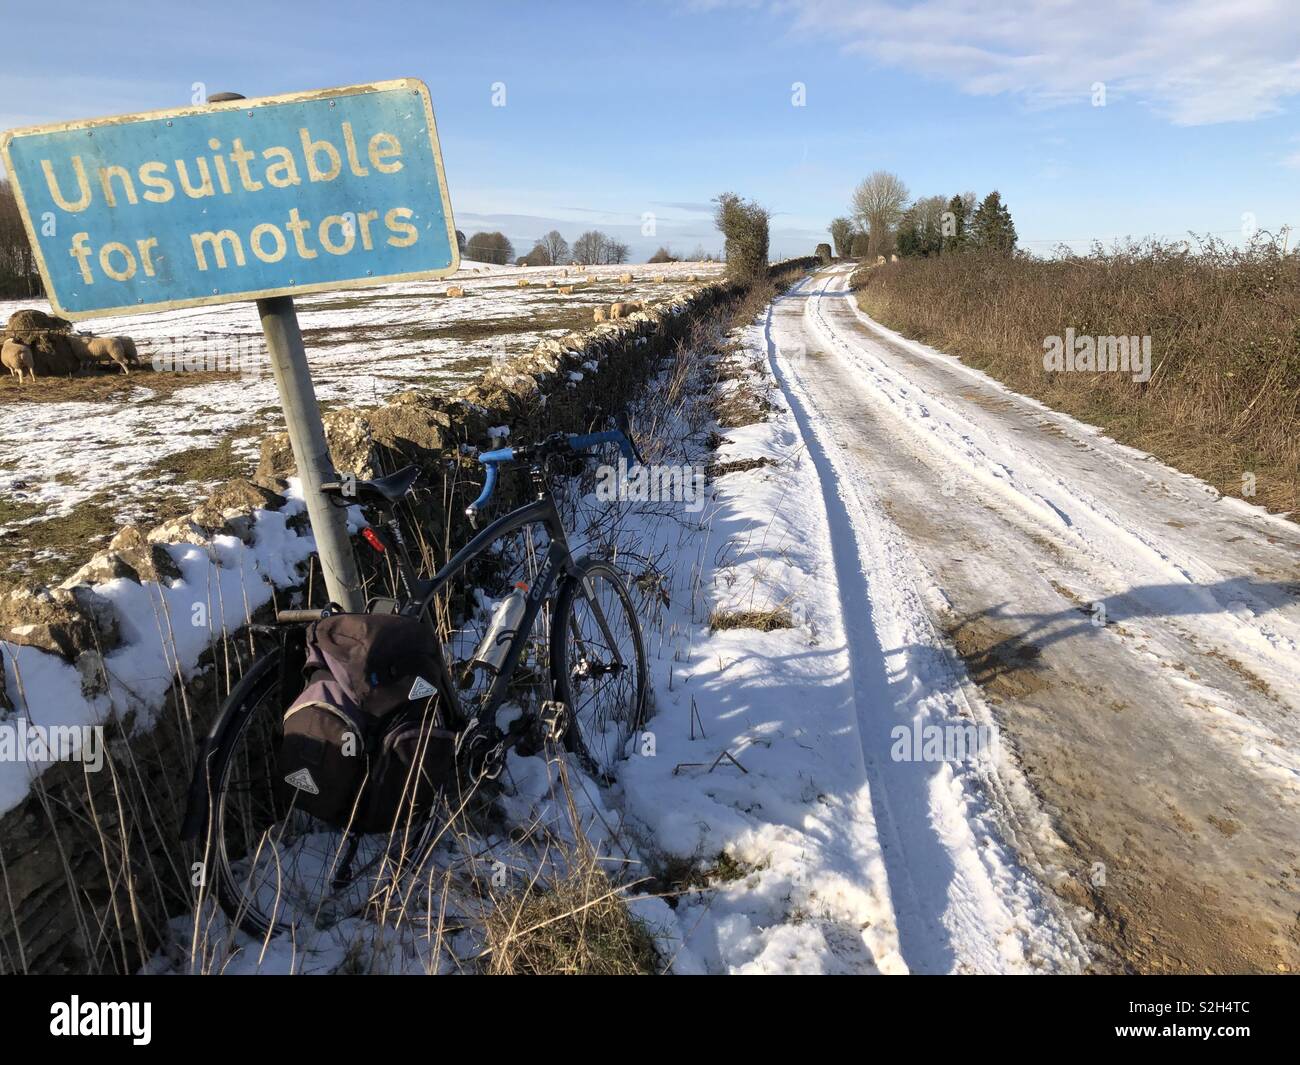 Vélo aventure en hiver profonde dans les Cotswolds, sur une ancienne voie romaine couverte de neige montrant un vélo prêté contre un panneau disant 'impropres à motors'. Banque D'Images